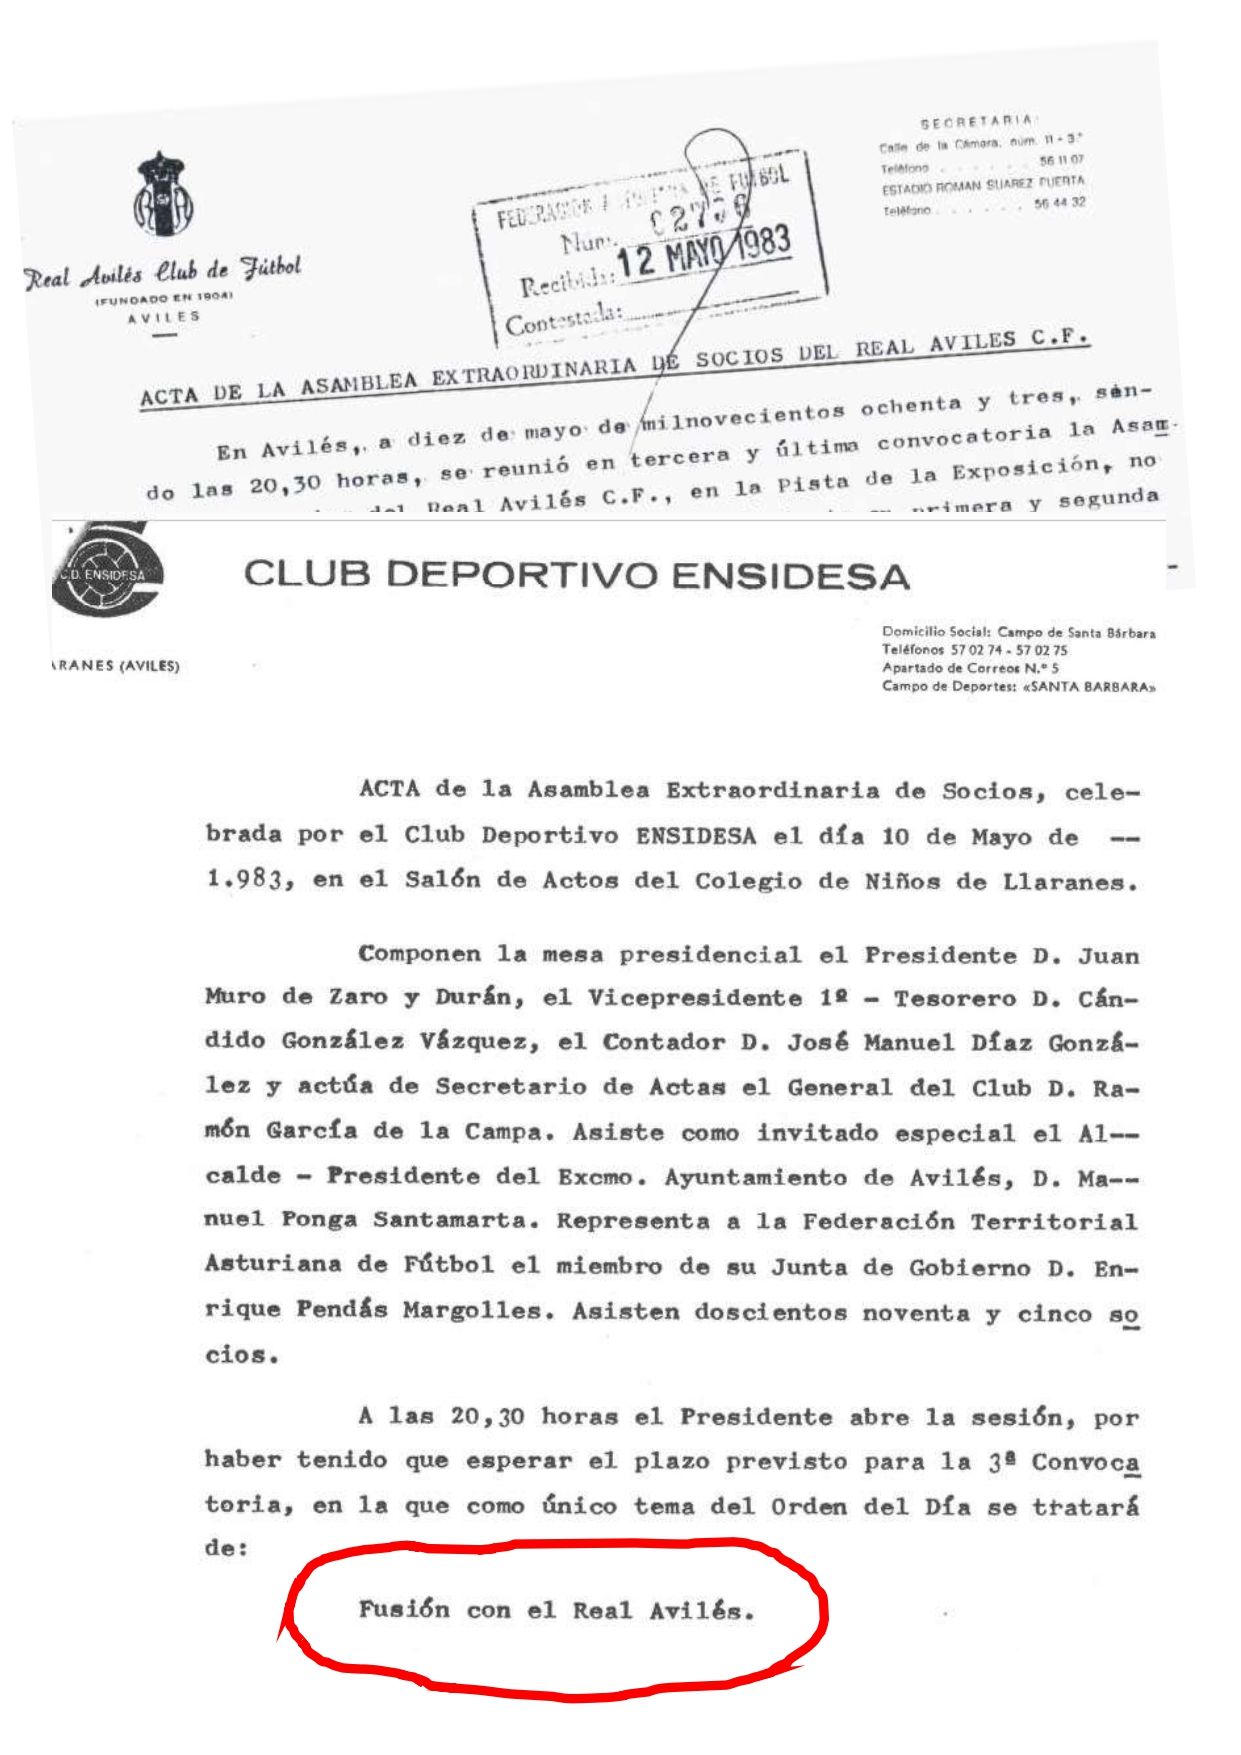 Extracto de las actas correspondientes a las asambleas extraordinarias que los desaparecidos Real Avilés CF y CD Ensidesa completaron el 10 de mayo de 1983, para aprobar su “fusión”.